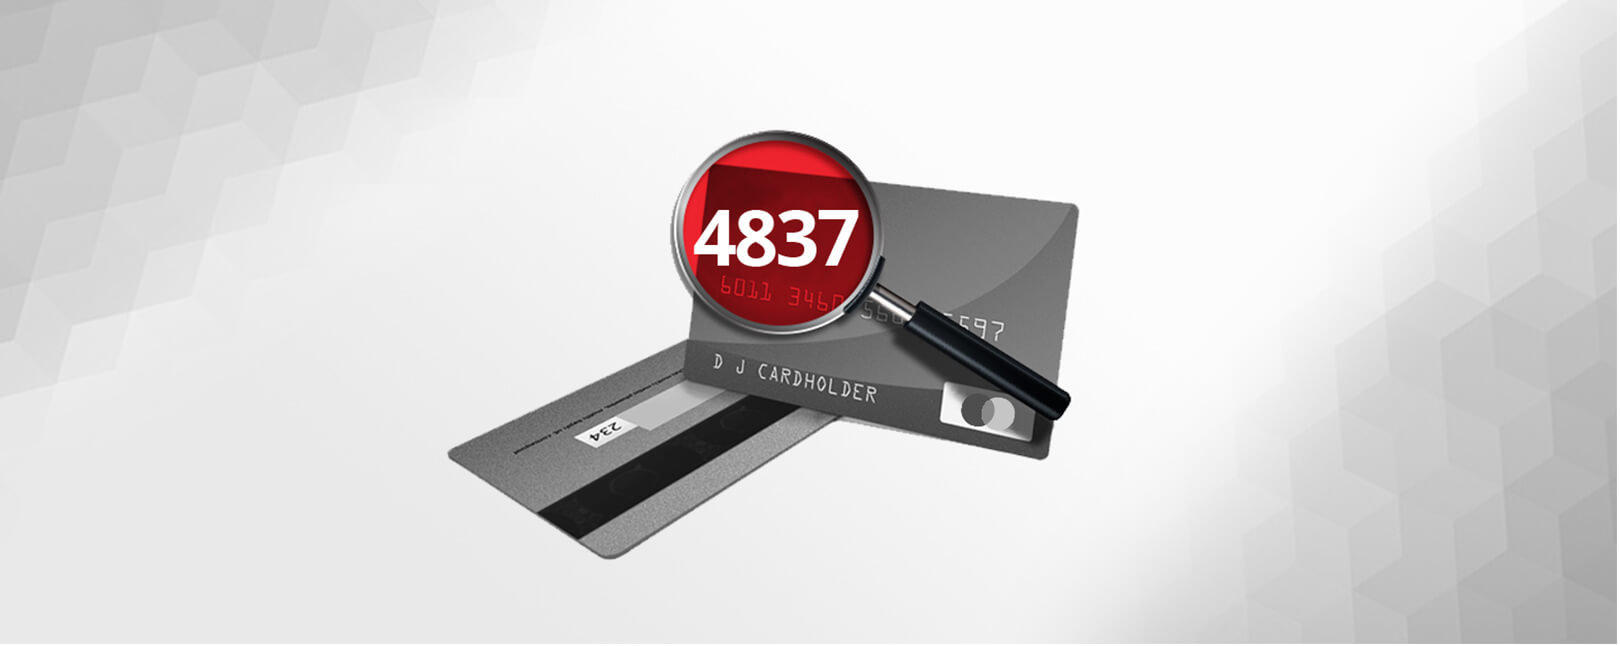 4837- No Cardholder Authorization